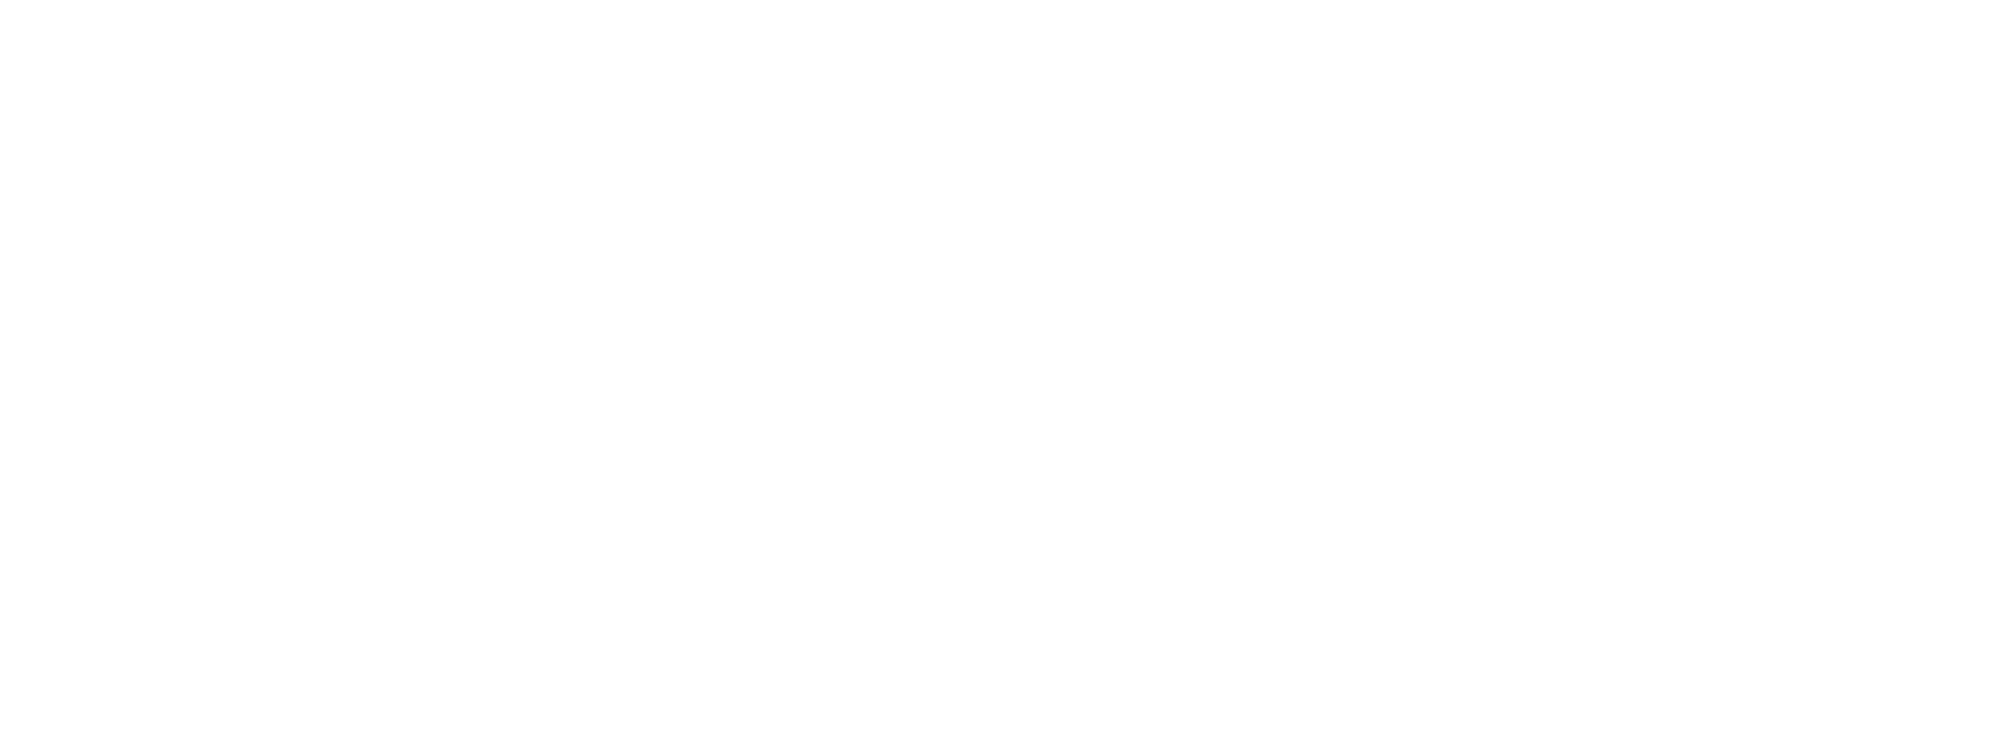 WDHN Logo - White